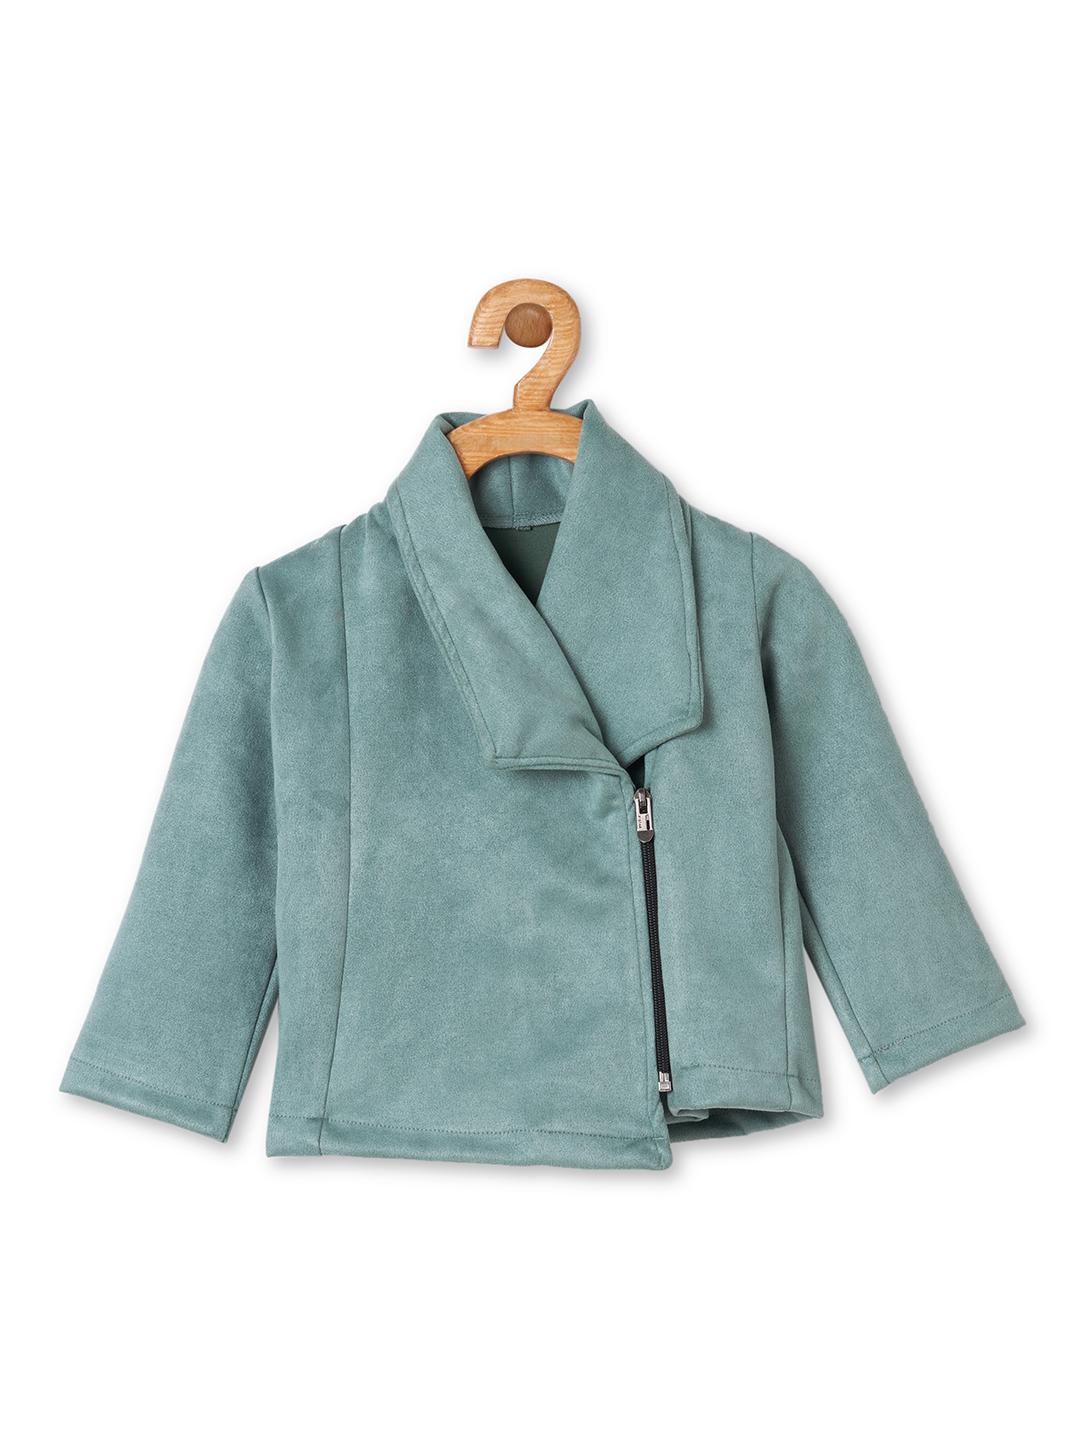 cadet-blue-suede-jacket-10510090BL, Kids Clothing, Polyester Girl Dress